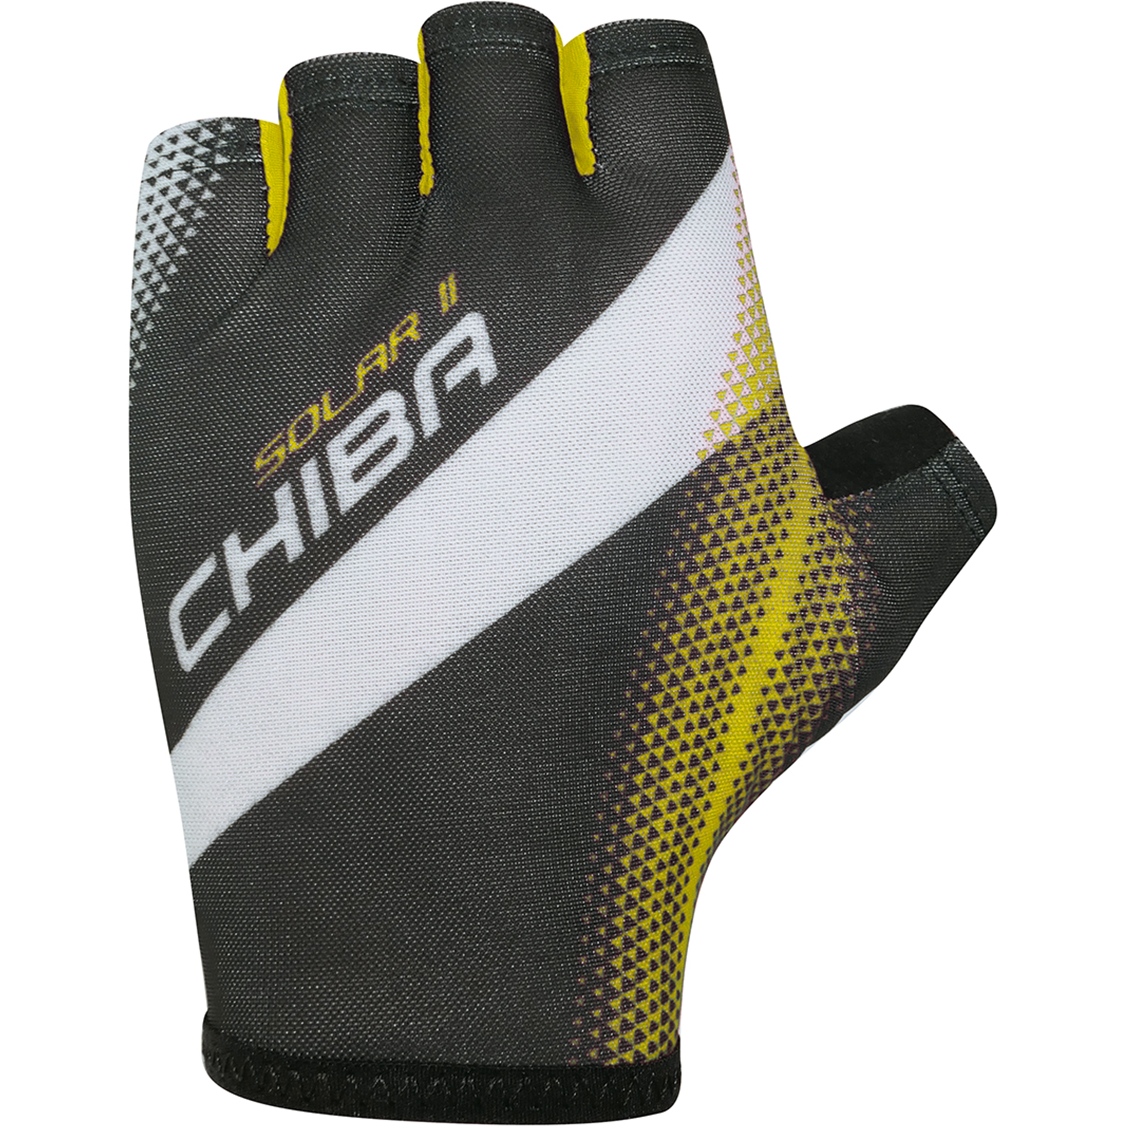 Produktbild von Chiba Solar II Kurzfinger-Handschuhe - black/neon yellow